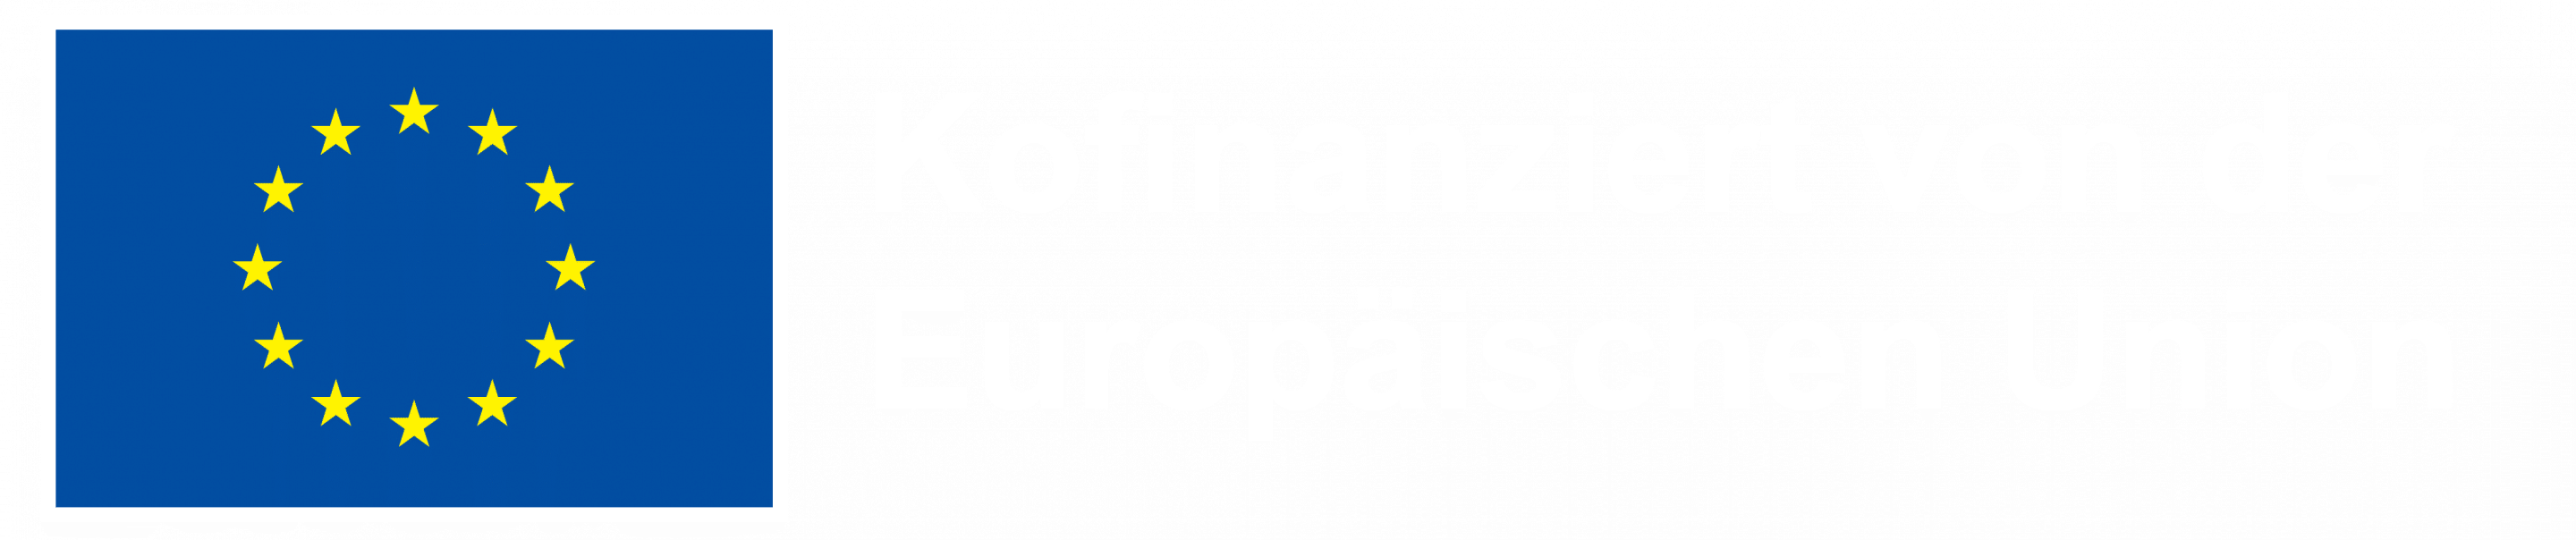 H Kofinanziert von der Europäischen Union_NEG